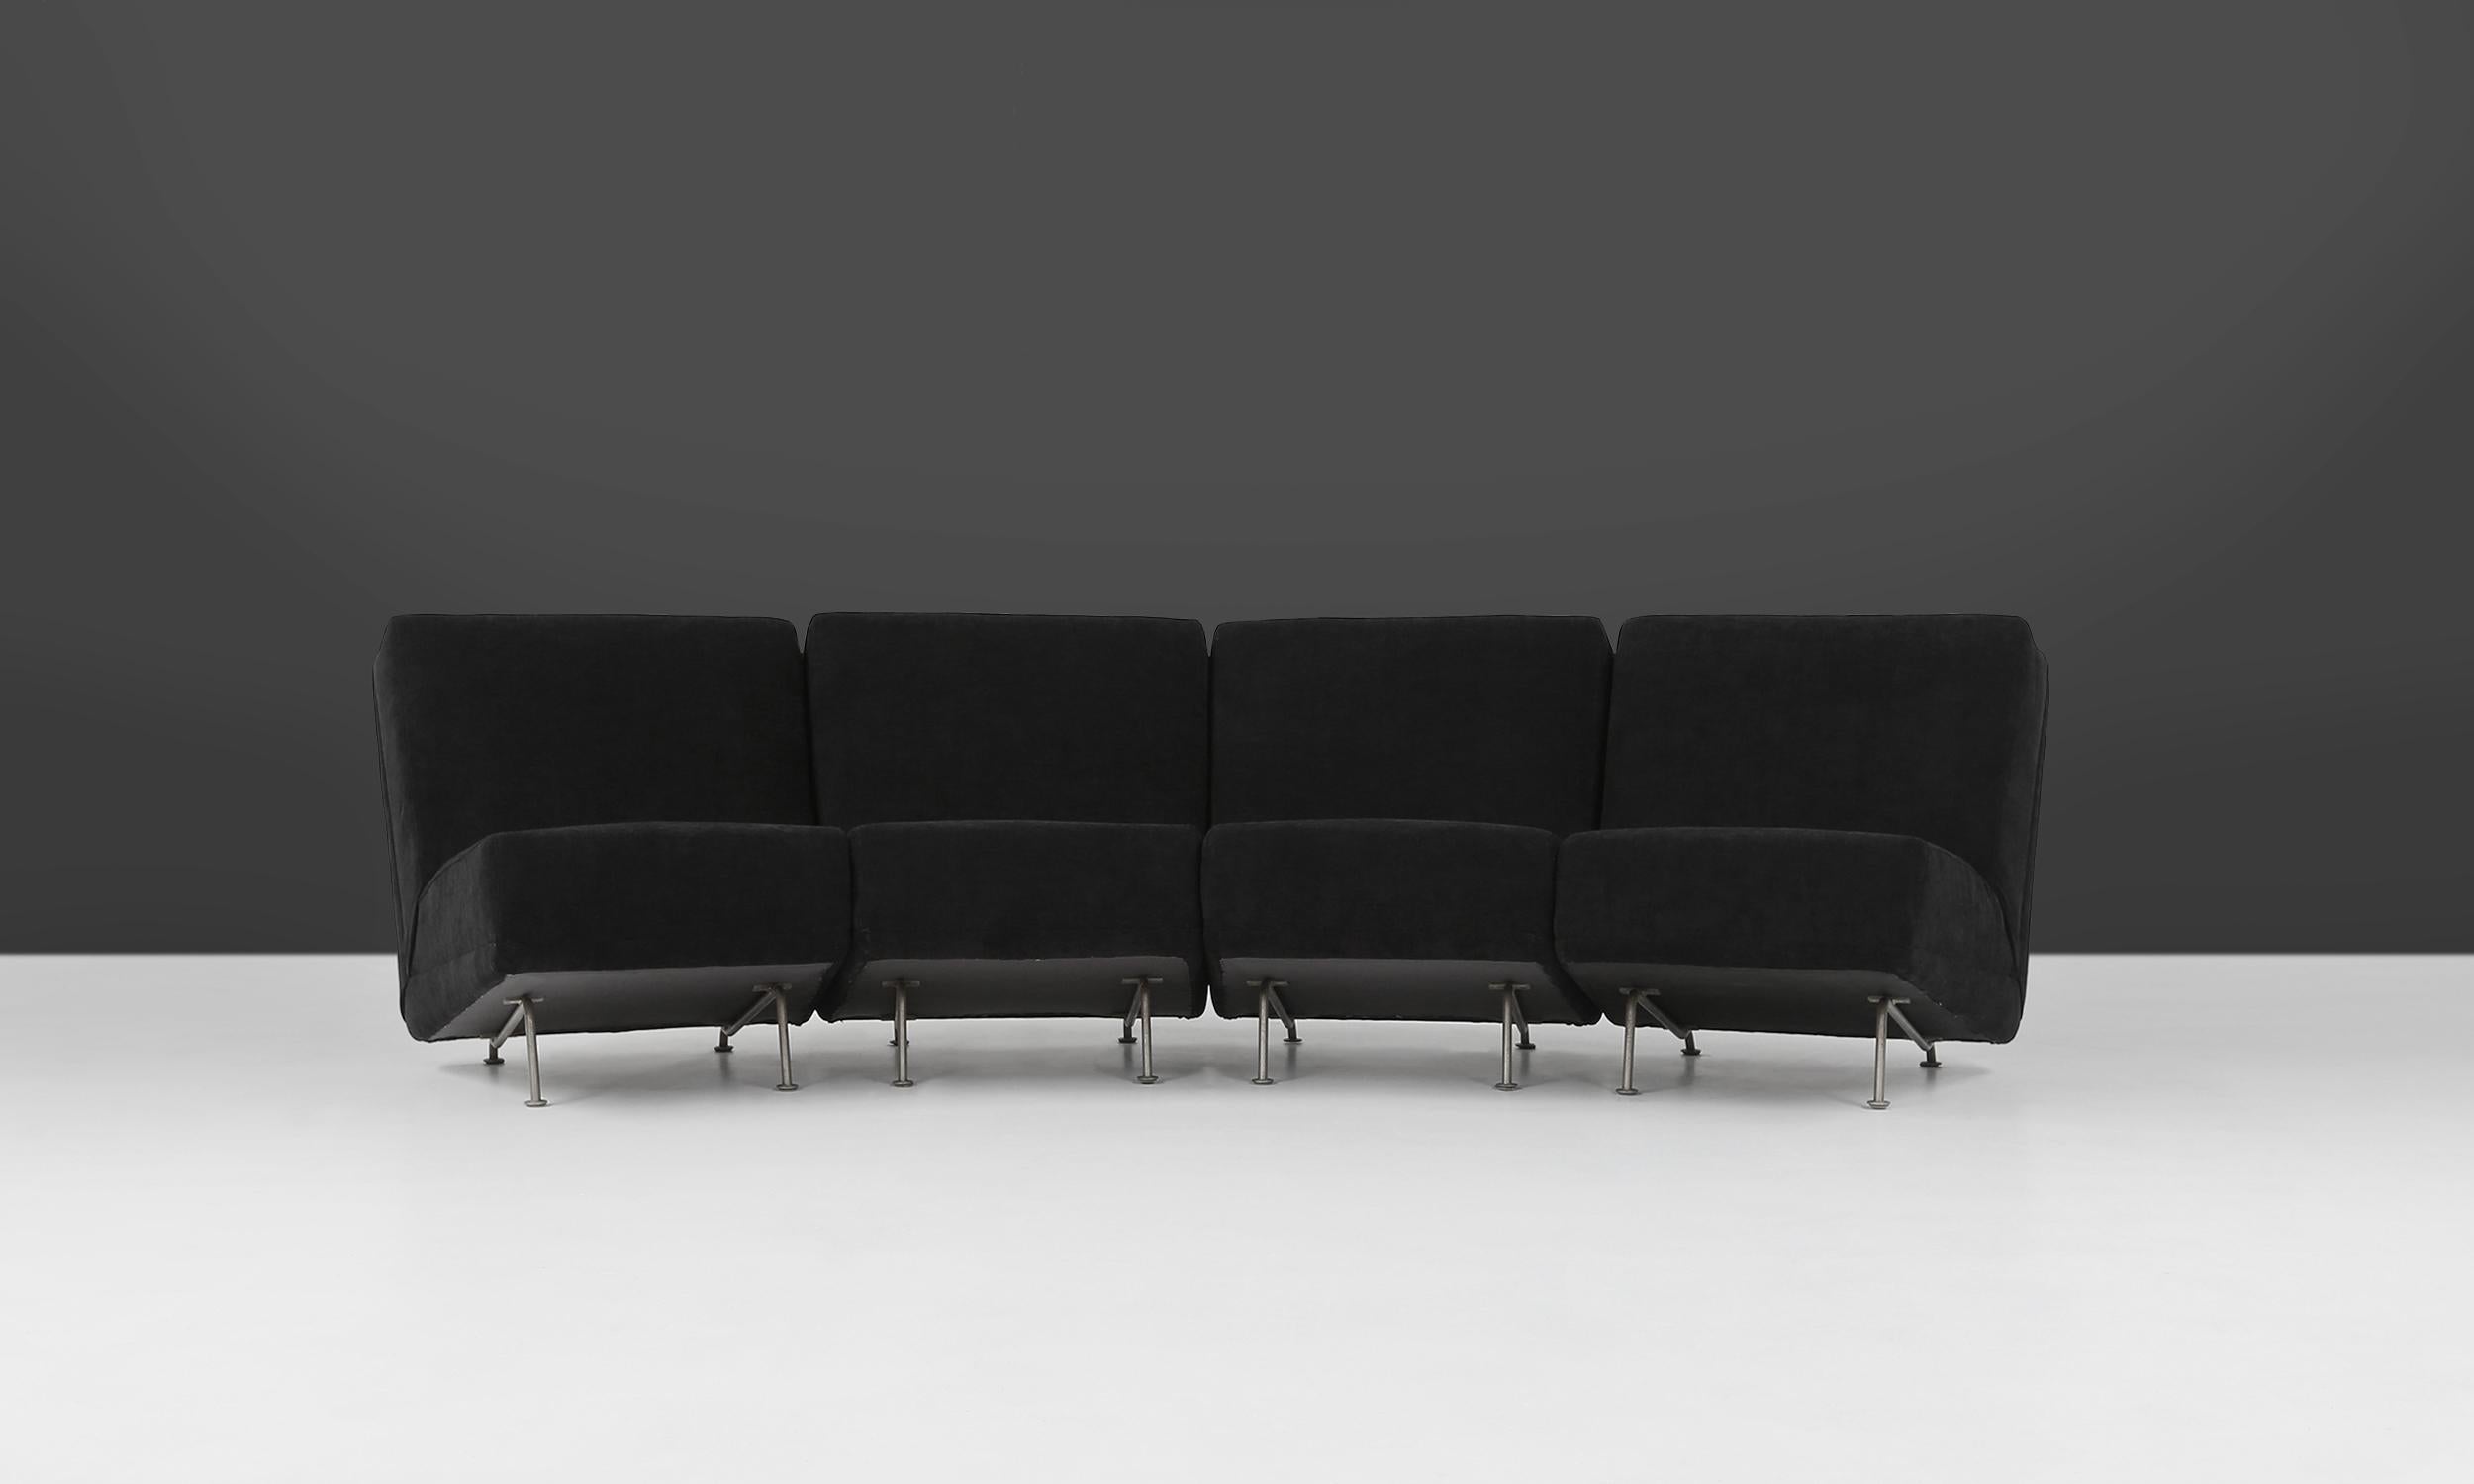 Modulare Sitzgruppe des niederländischen Designers Theo Ruth für Artifort aus den 1950er Jahren. Die vier Elemente können einzeln verwendet oder zu einem viersitzigen Sofa zusammengefügt werden. Diese Stühle haben ein Metallgestell und eine